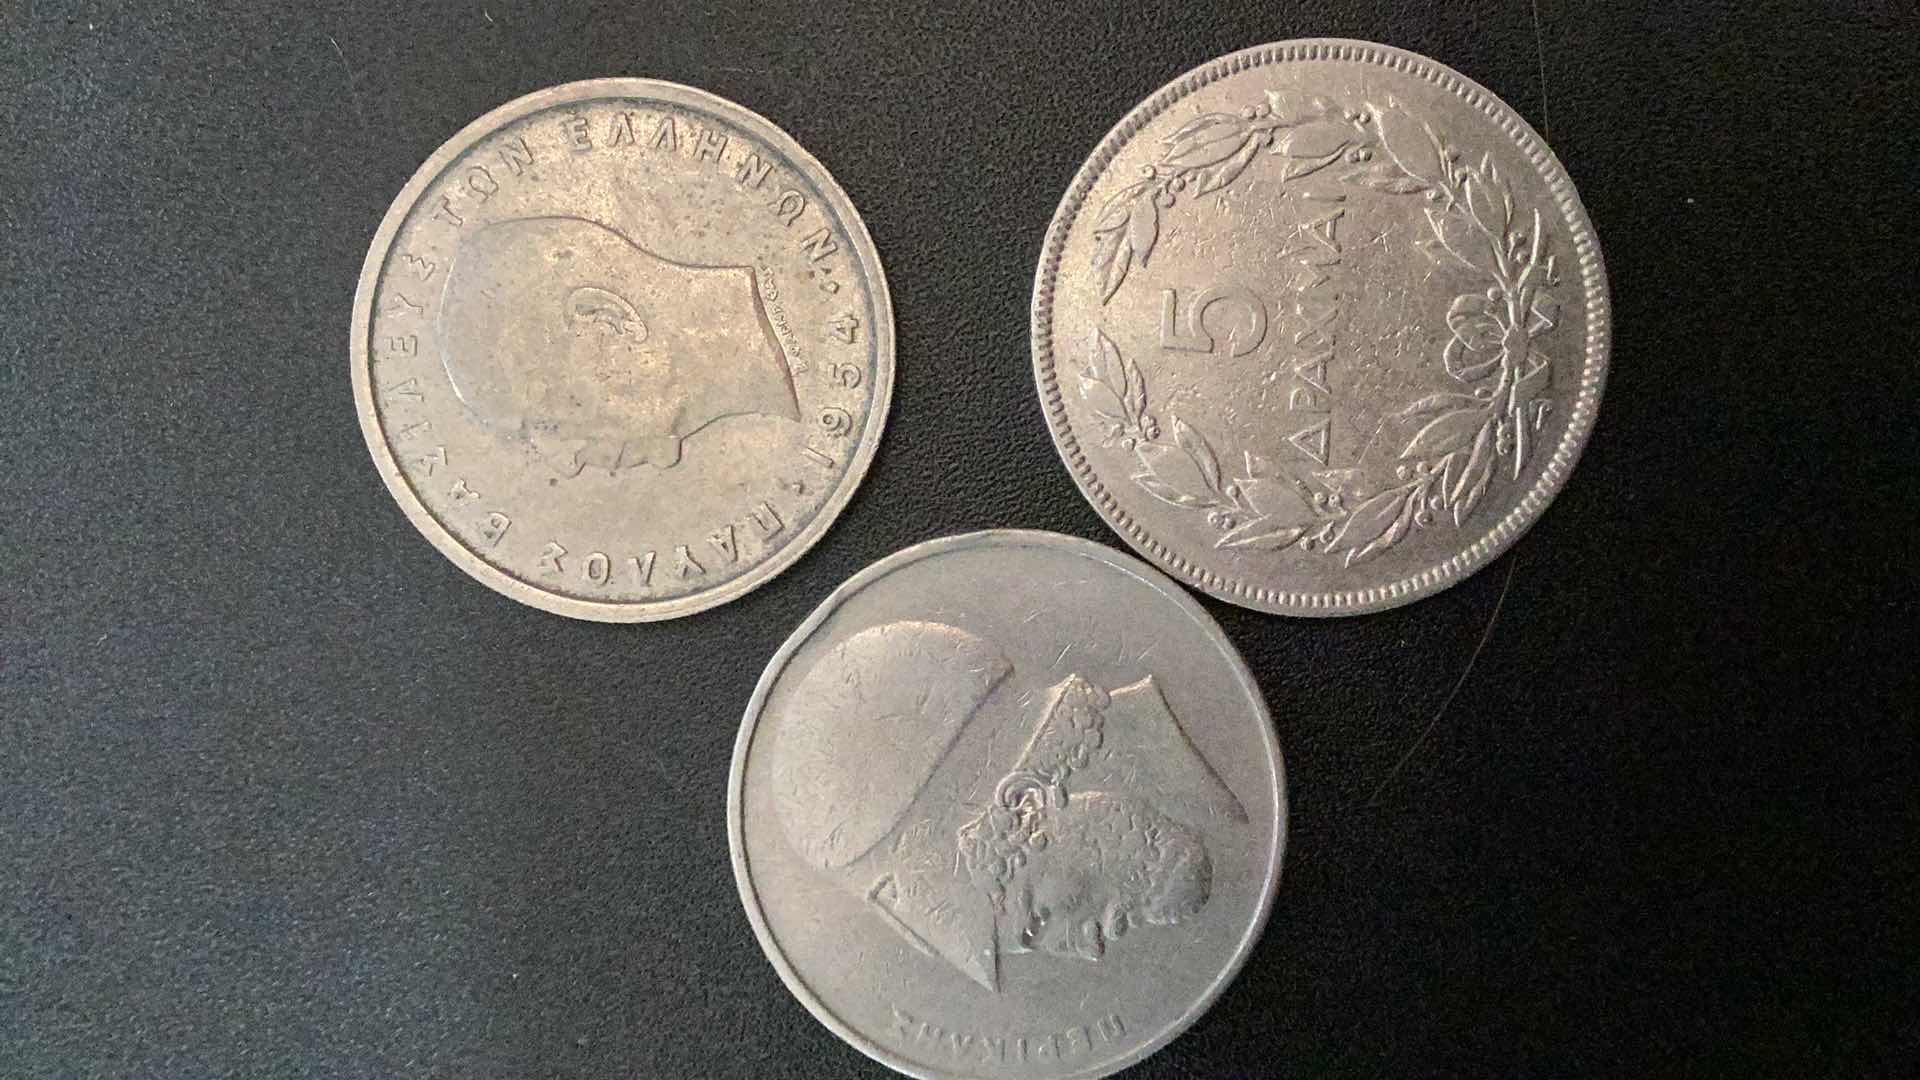 Photo 2 of 3 COLLECTIBLE COINS - GREECE 1930, 1954, 1976